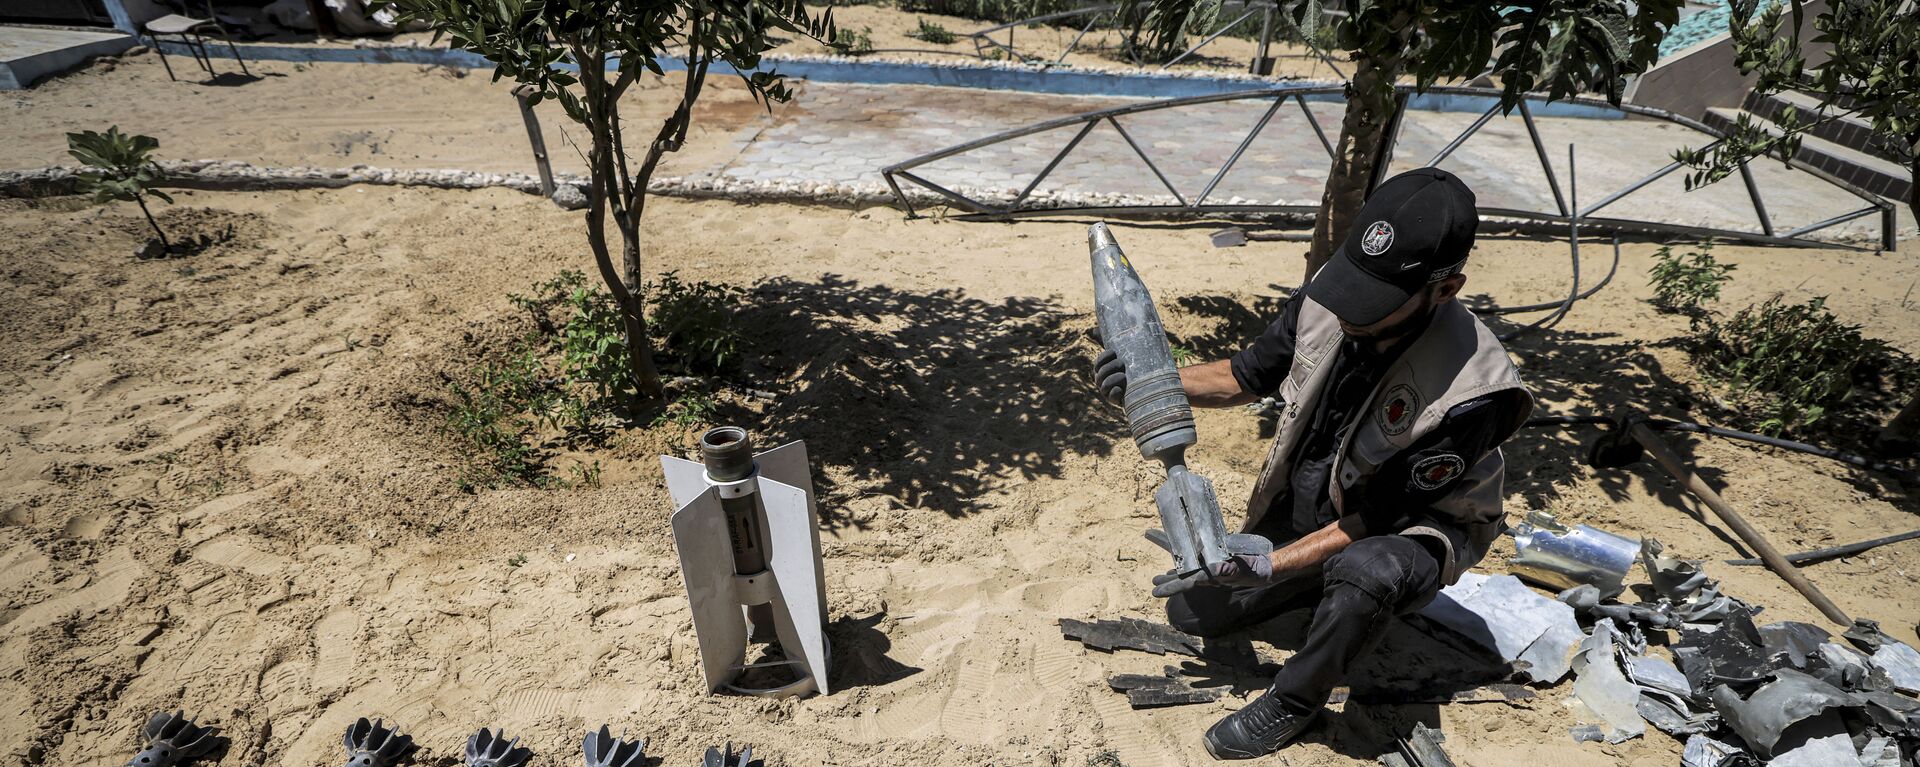 خبراء المتفجرات من حماس يقومون بإزالة قنابل وصواريخ قوات الطيران الحربي التي لم تنفجر في خان يونس، بعد تبادل إطلاق النار بين قطاع غزة وإسرائيل في مايو الماضي، 5 يونيو 2021 - سبوتنيك عربي, 1920, 03.12.2021